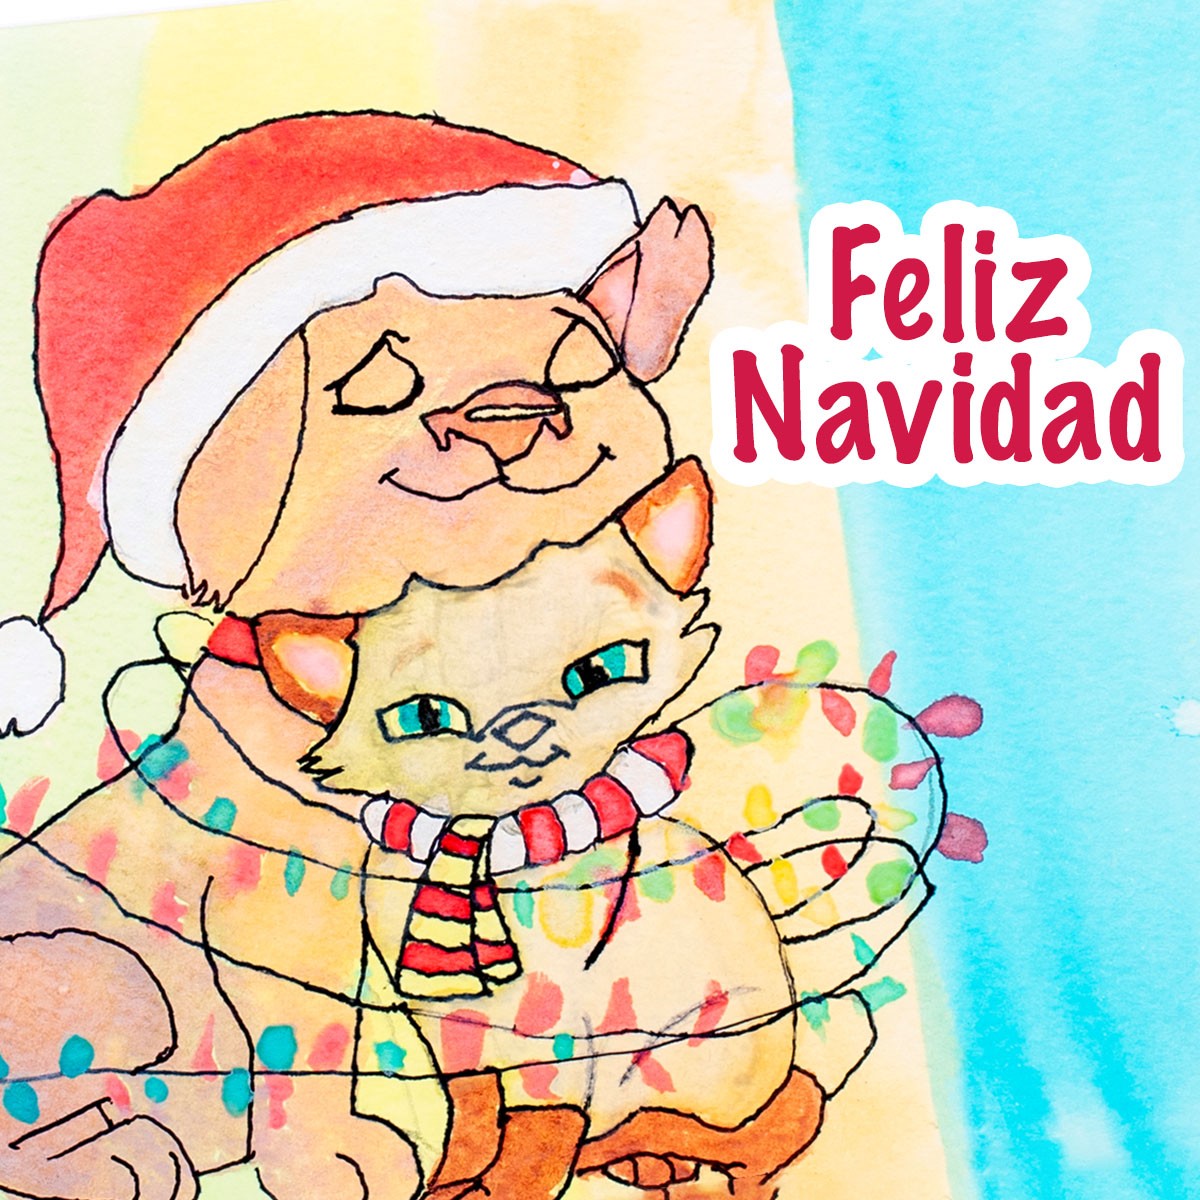 Dibujo de un perrito y un gatito abrazados, ambos vestidos de tema navideño, con un mensaje que dice “Feliz Navidad”.